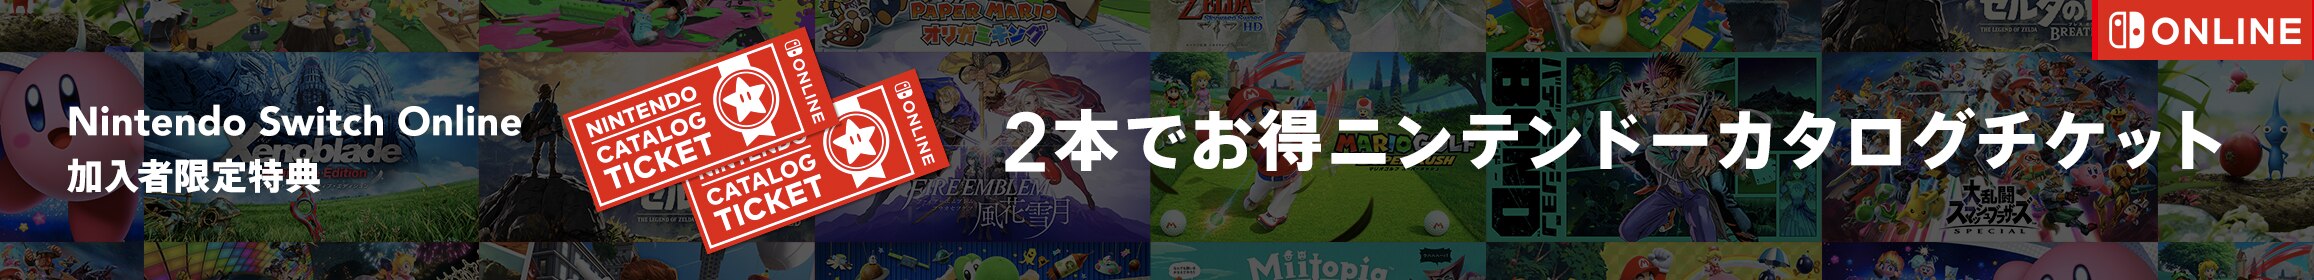 Nintendo Switch Online加入者限定特典 2本でお得 ニンテンドーカタログチケット